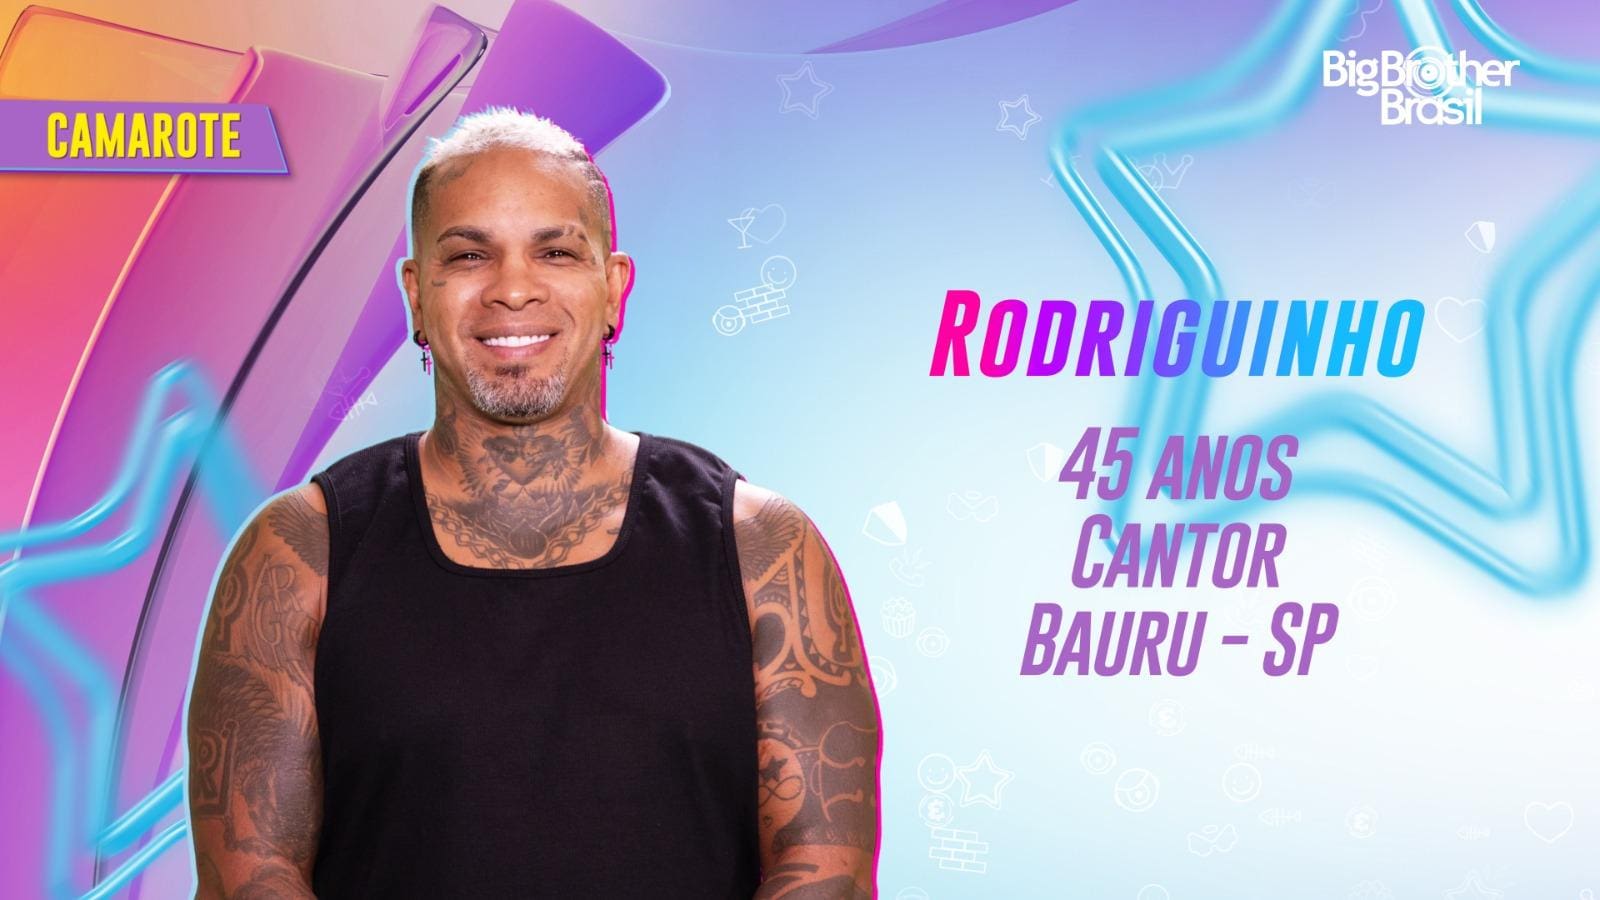 Rodriguinho foi anunciado no Camarote do BBB